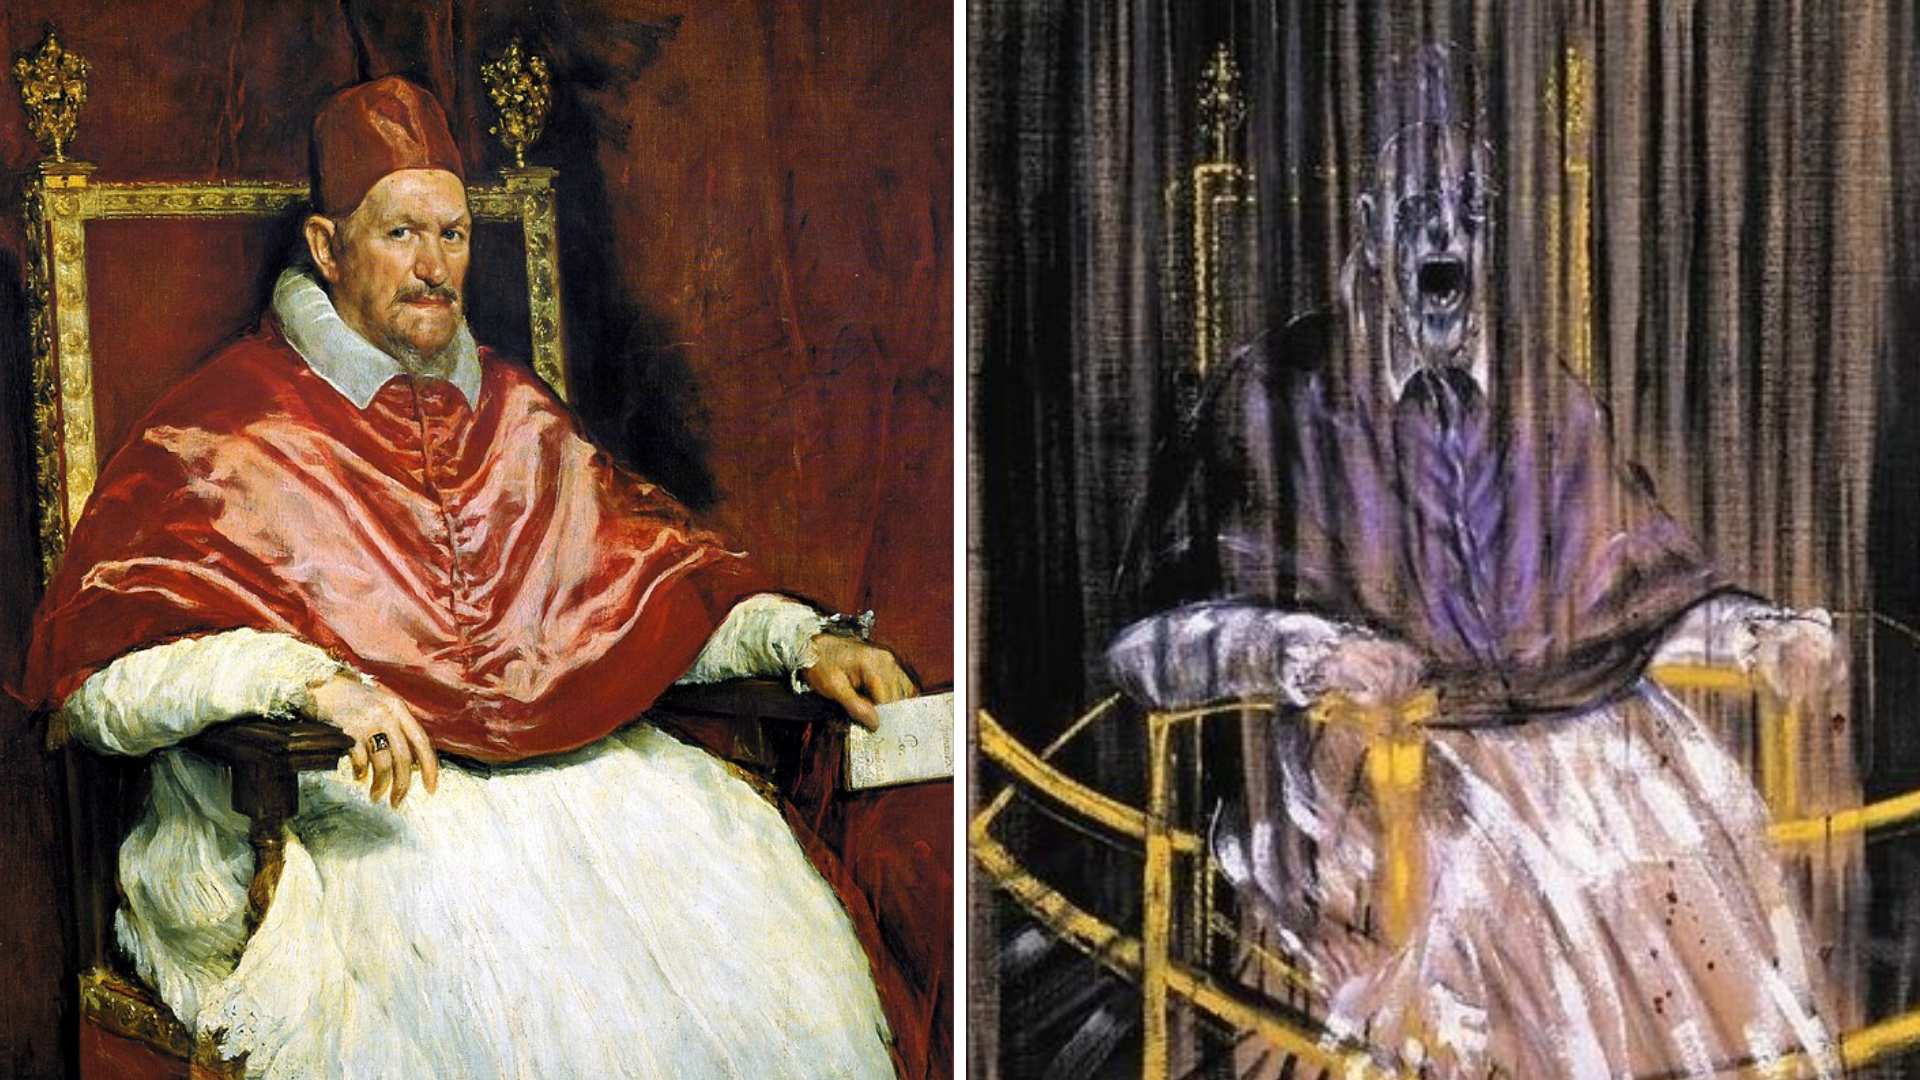 "Папа" Веласкеса (слева) и "Папа" Бэкона (справа): найдите десять отличий. Изображения © Wikimedia Commons / Galleria Doria Pamphilj, Des Moines Art Center